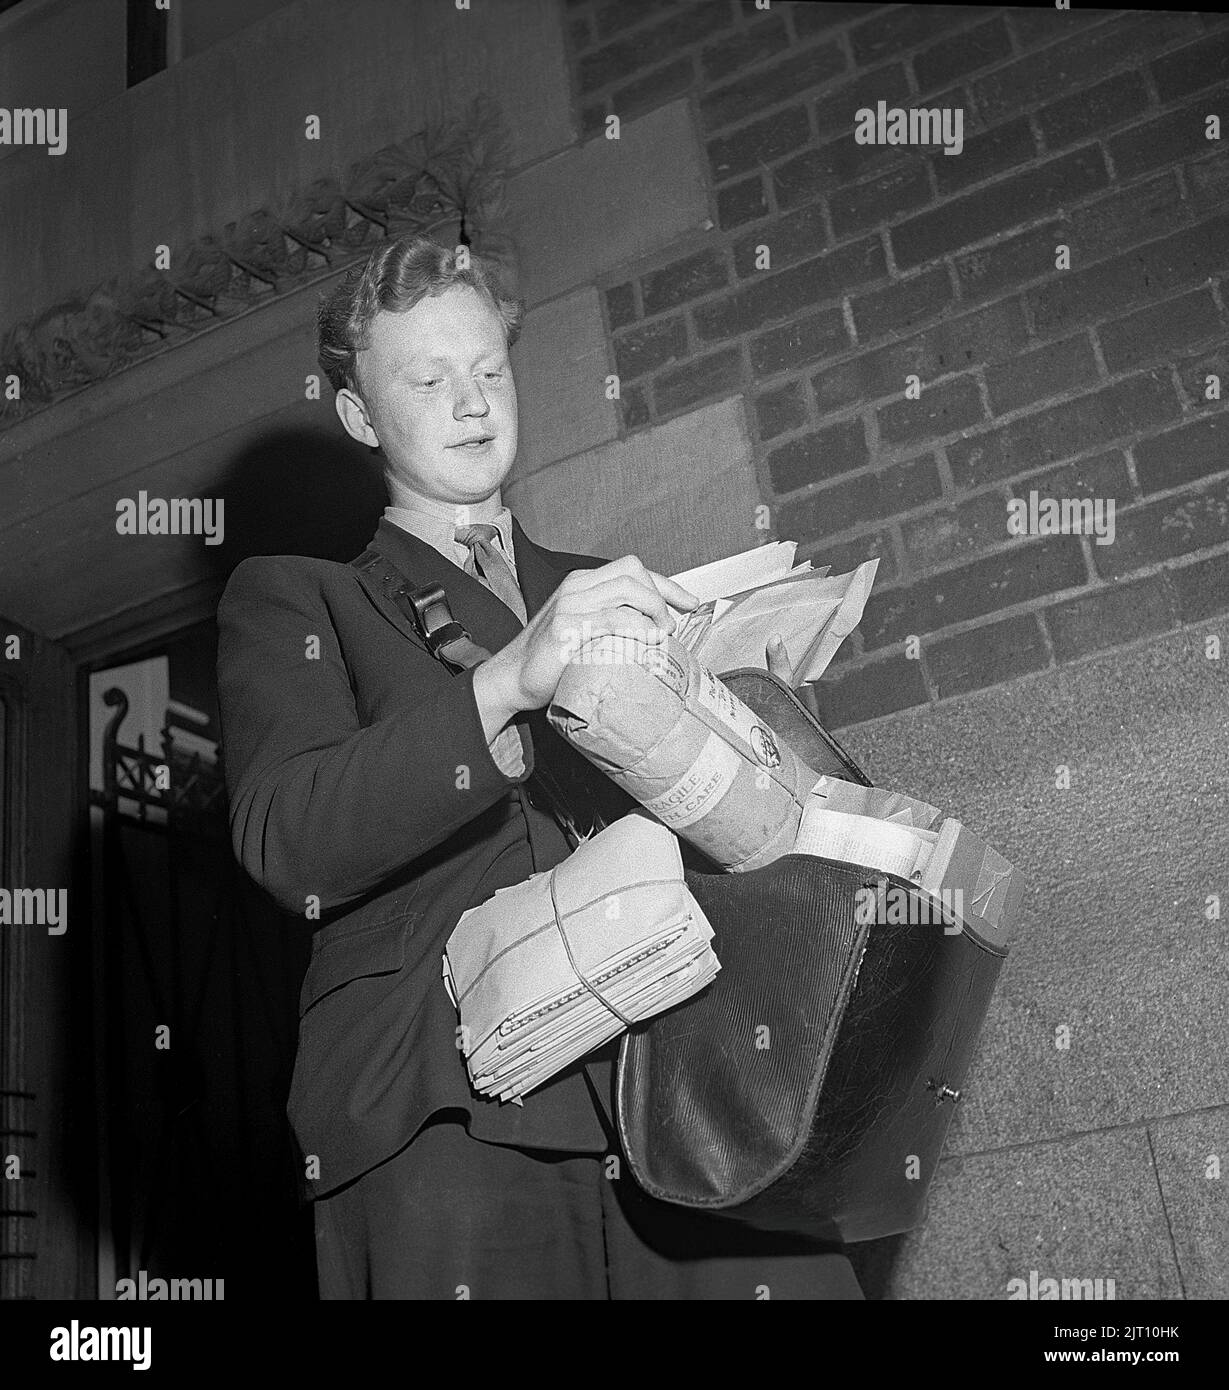 1940s mailman. Le poste est prêt à être livré et le jeune mailman a son sac plein de lettres et de colis. Angleterre 1946 Kristoffersson U94-1 Banque D'Images